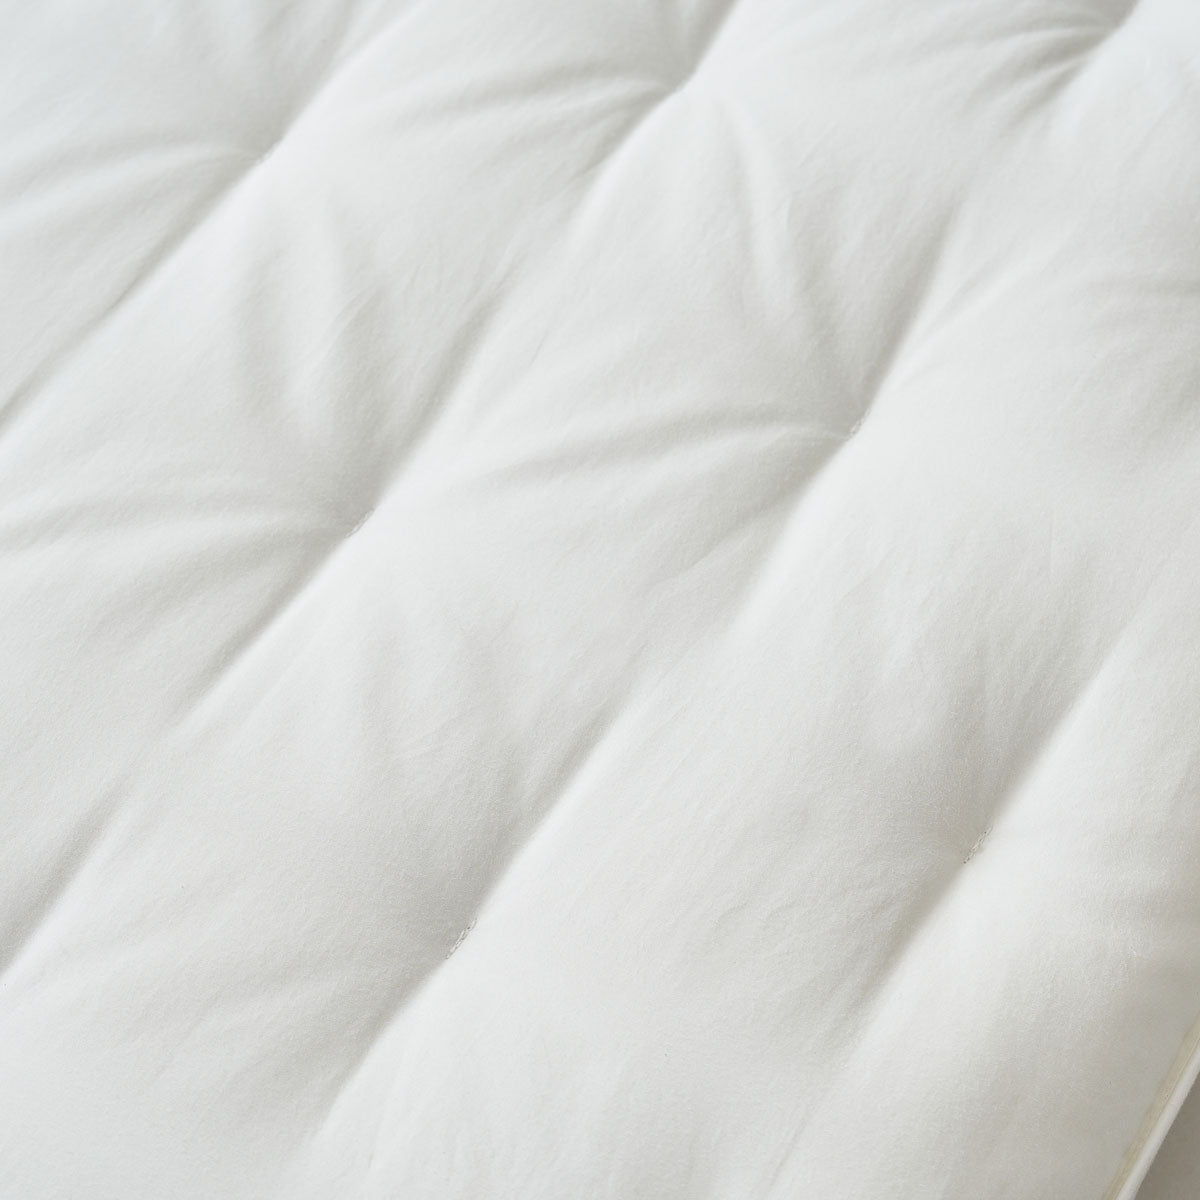 PiloMio® Goose Down Memory Foam Dual Pillow